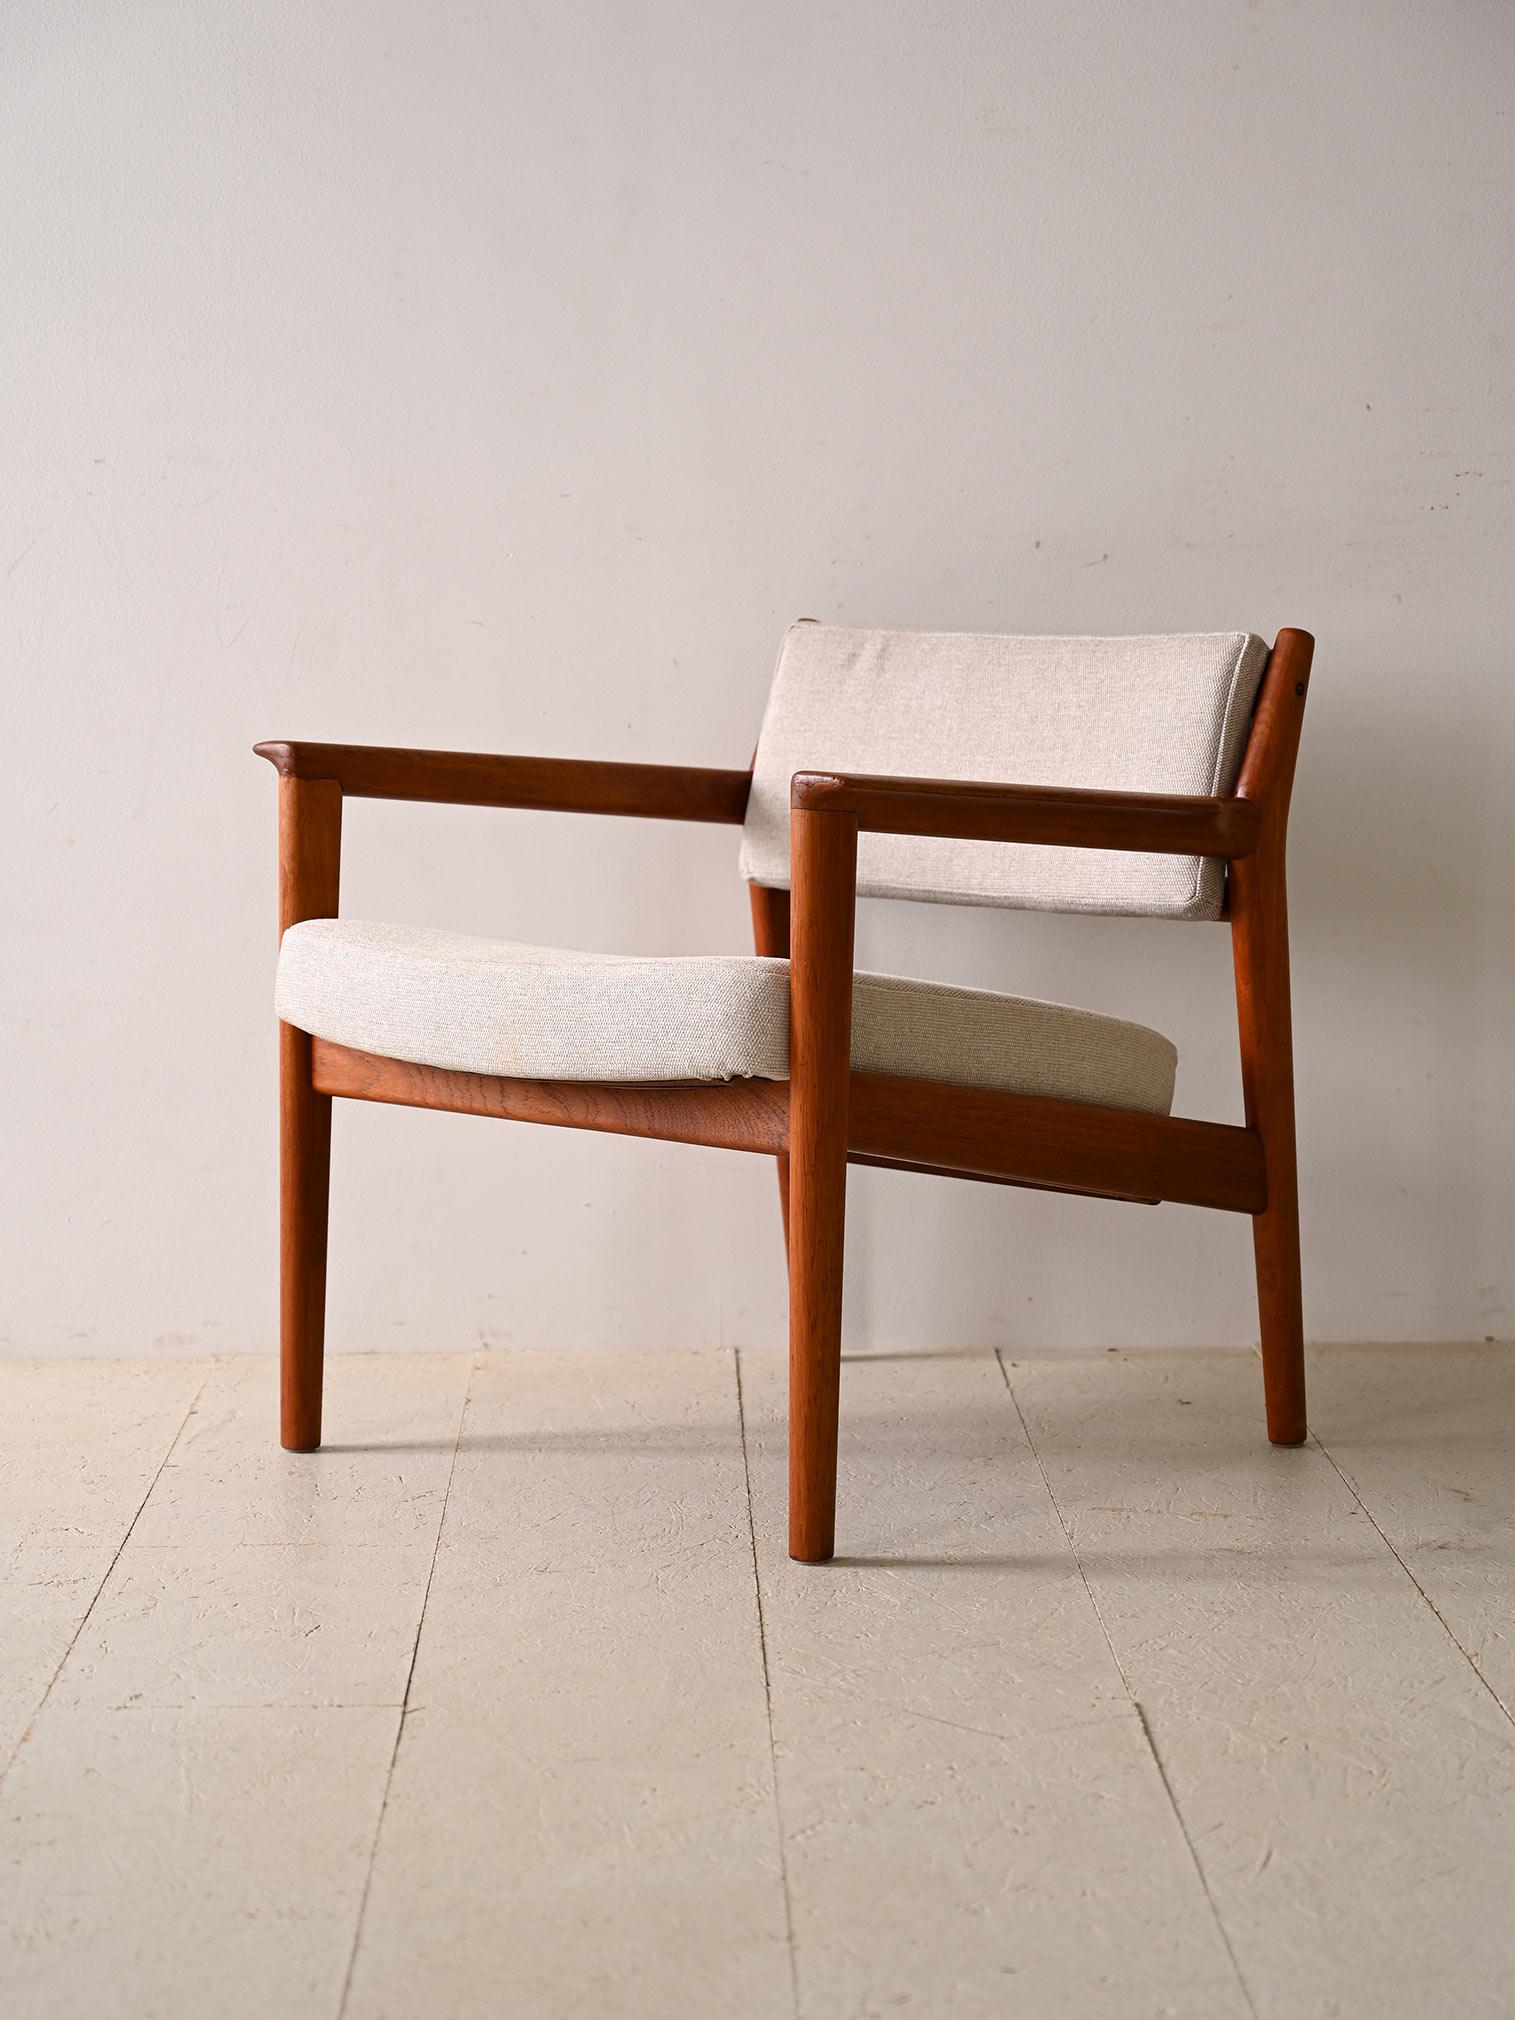 Fauteuil minimaliste en teck avec assise rembourrée. Ajoutez une touche de simplicité et de sophistication à votre espace avec ce fauteuil aux lignes essentielles et au design intemporel. Fabriqué à partir d'une structure en teck de haute qualité,